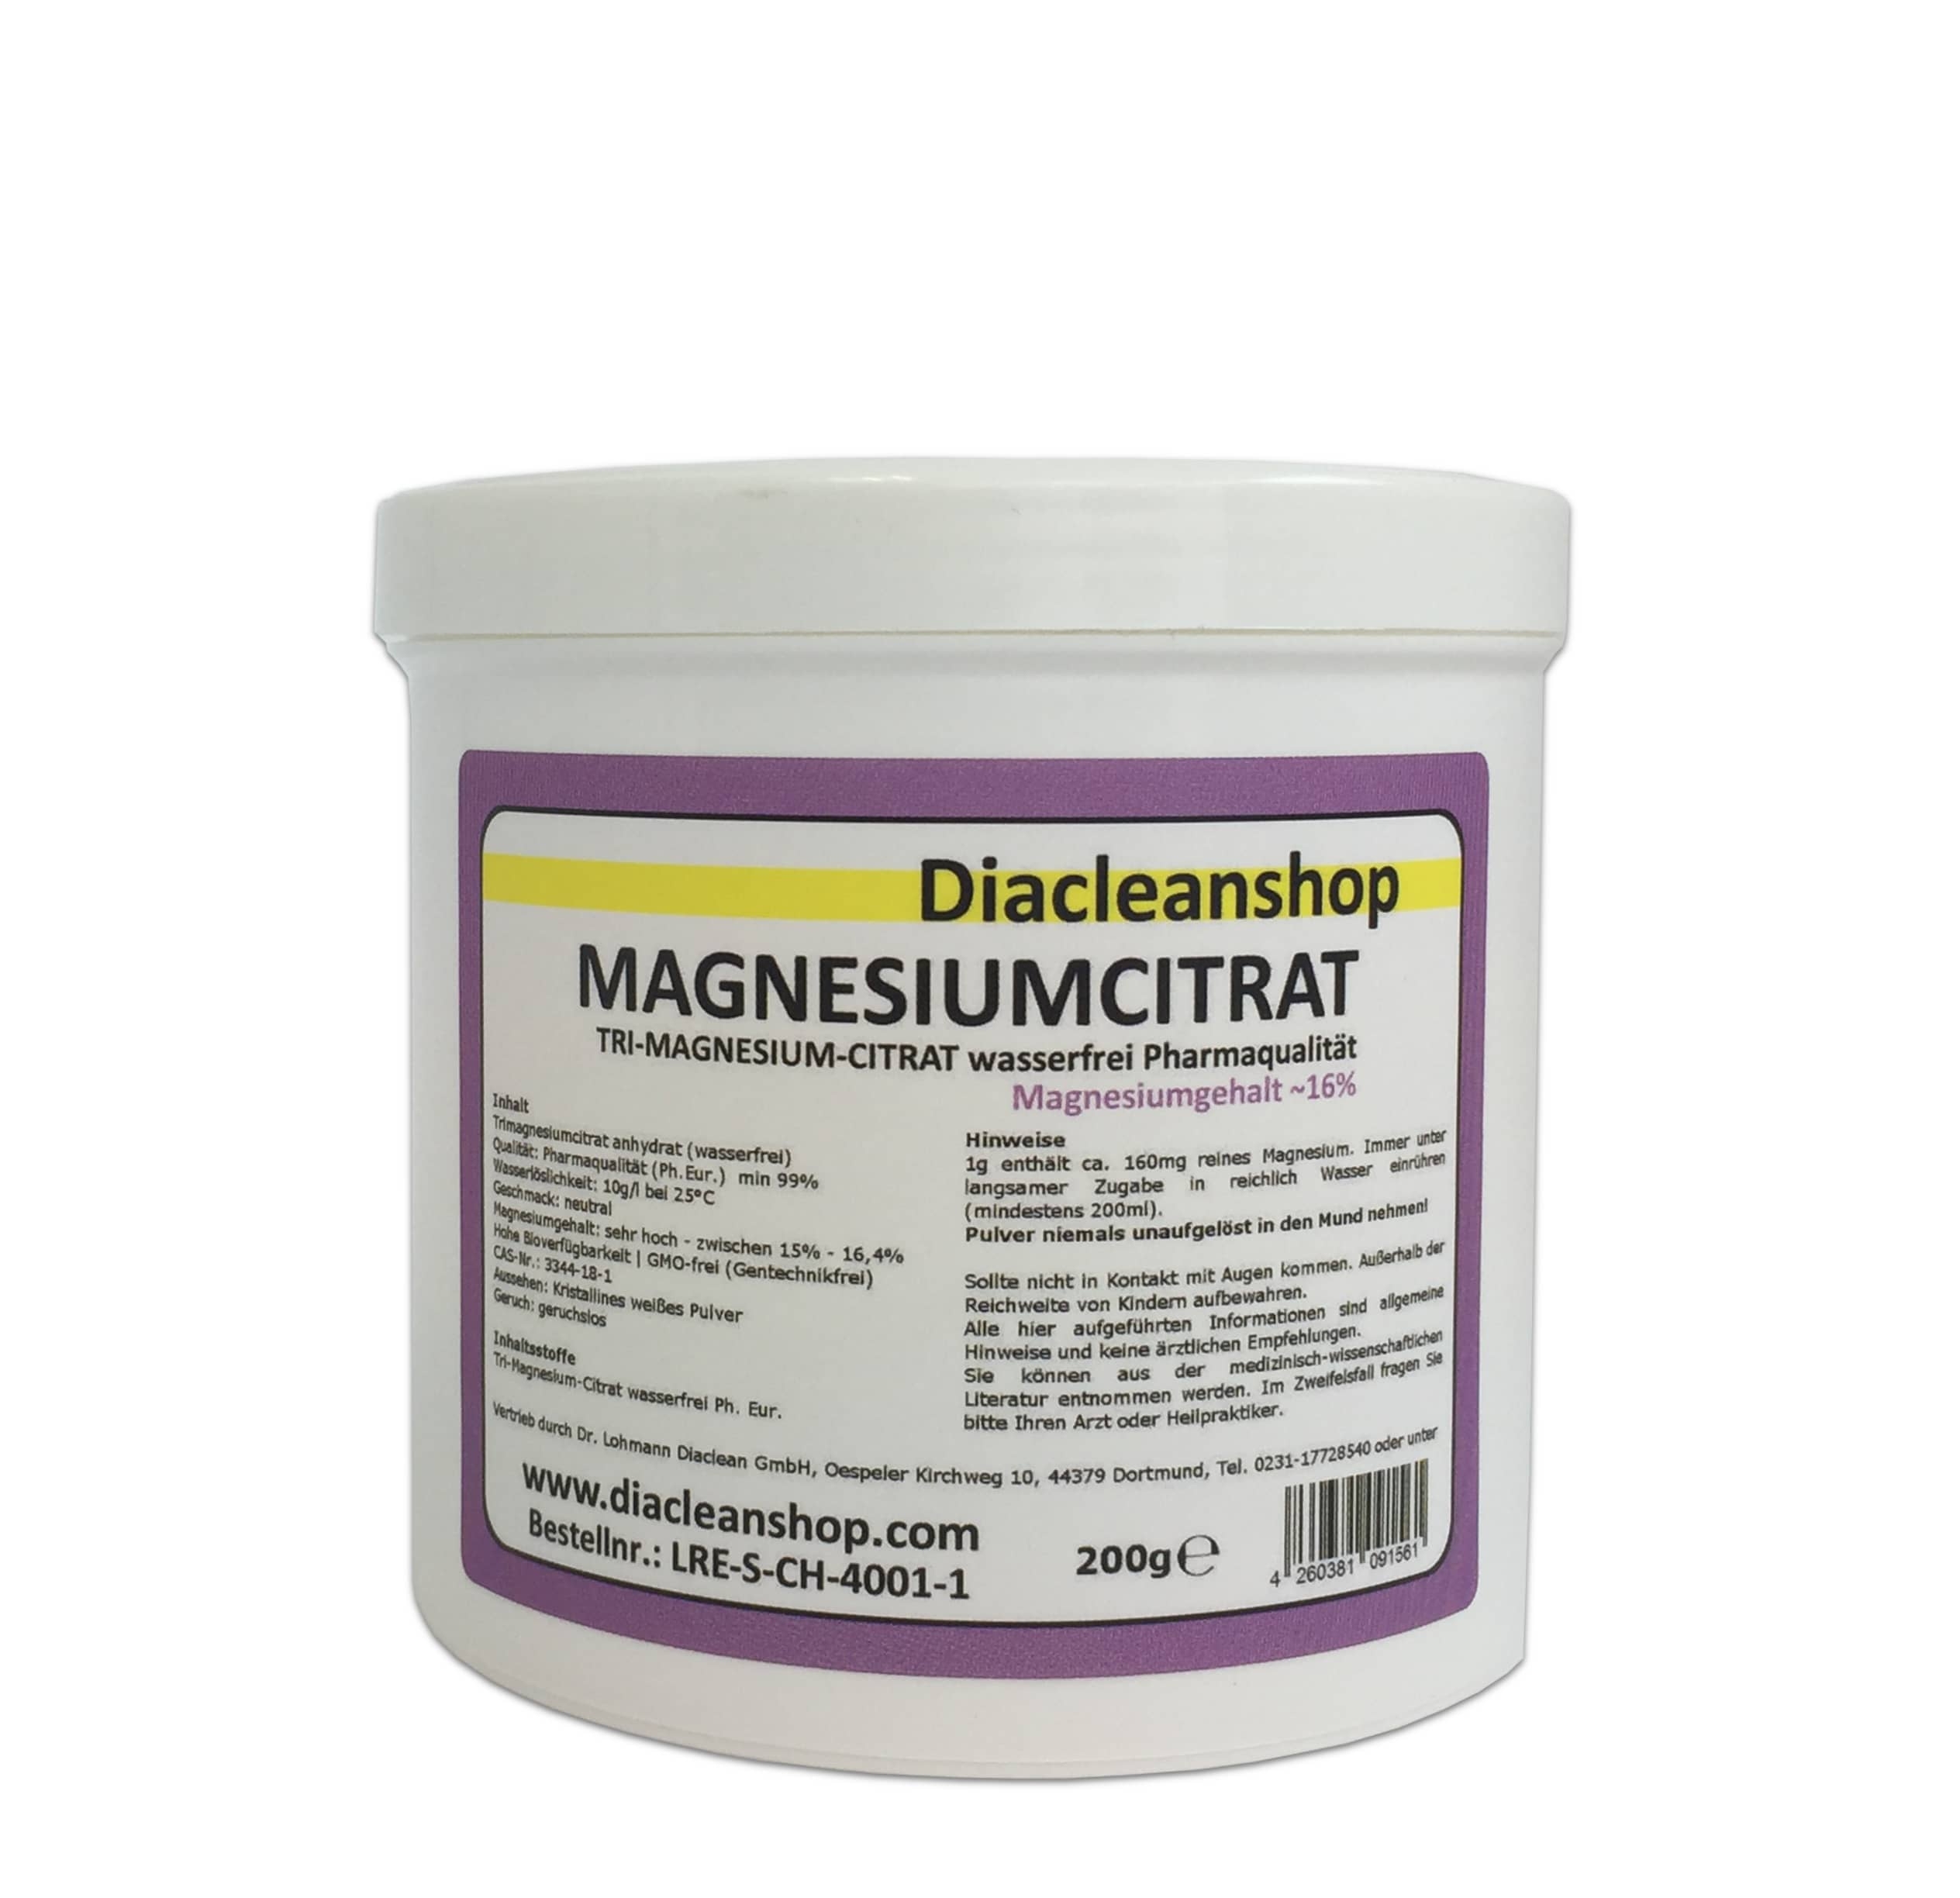 Magnesiumcitrat - Tri-Magnesium-Citrat wasserfrei Pharmaqualität